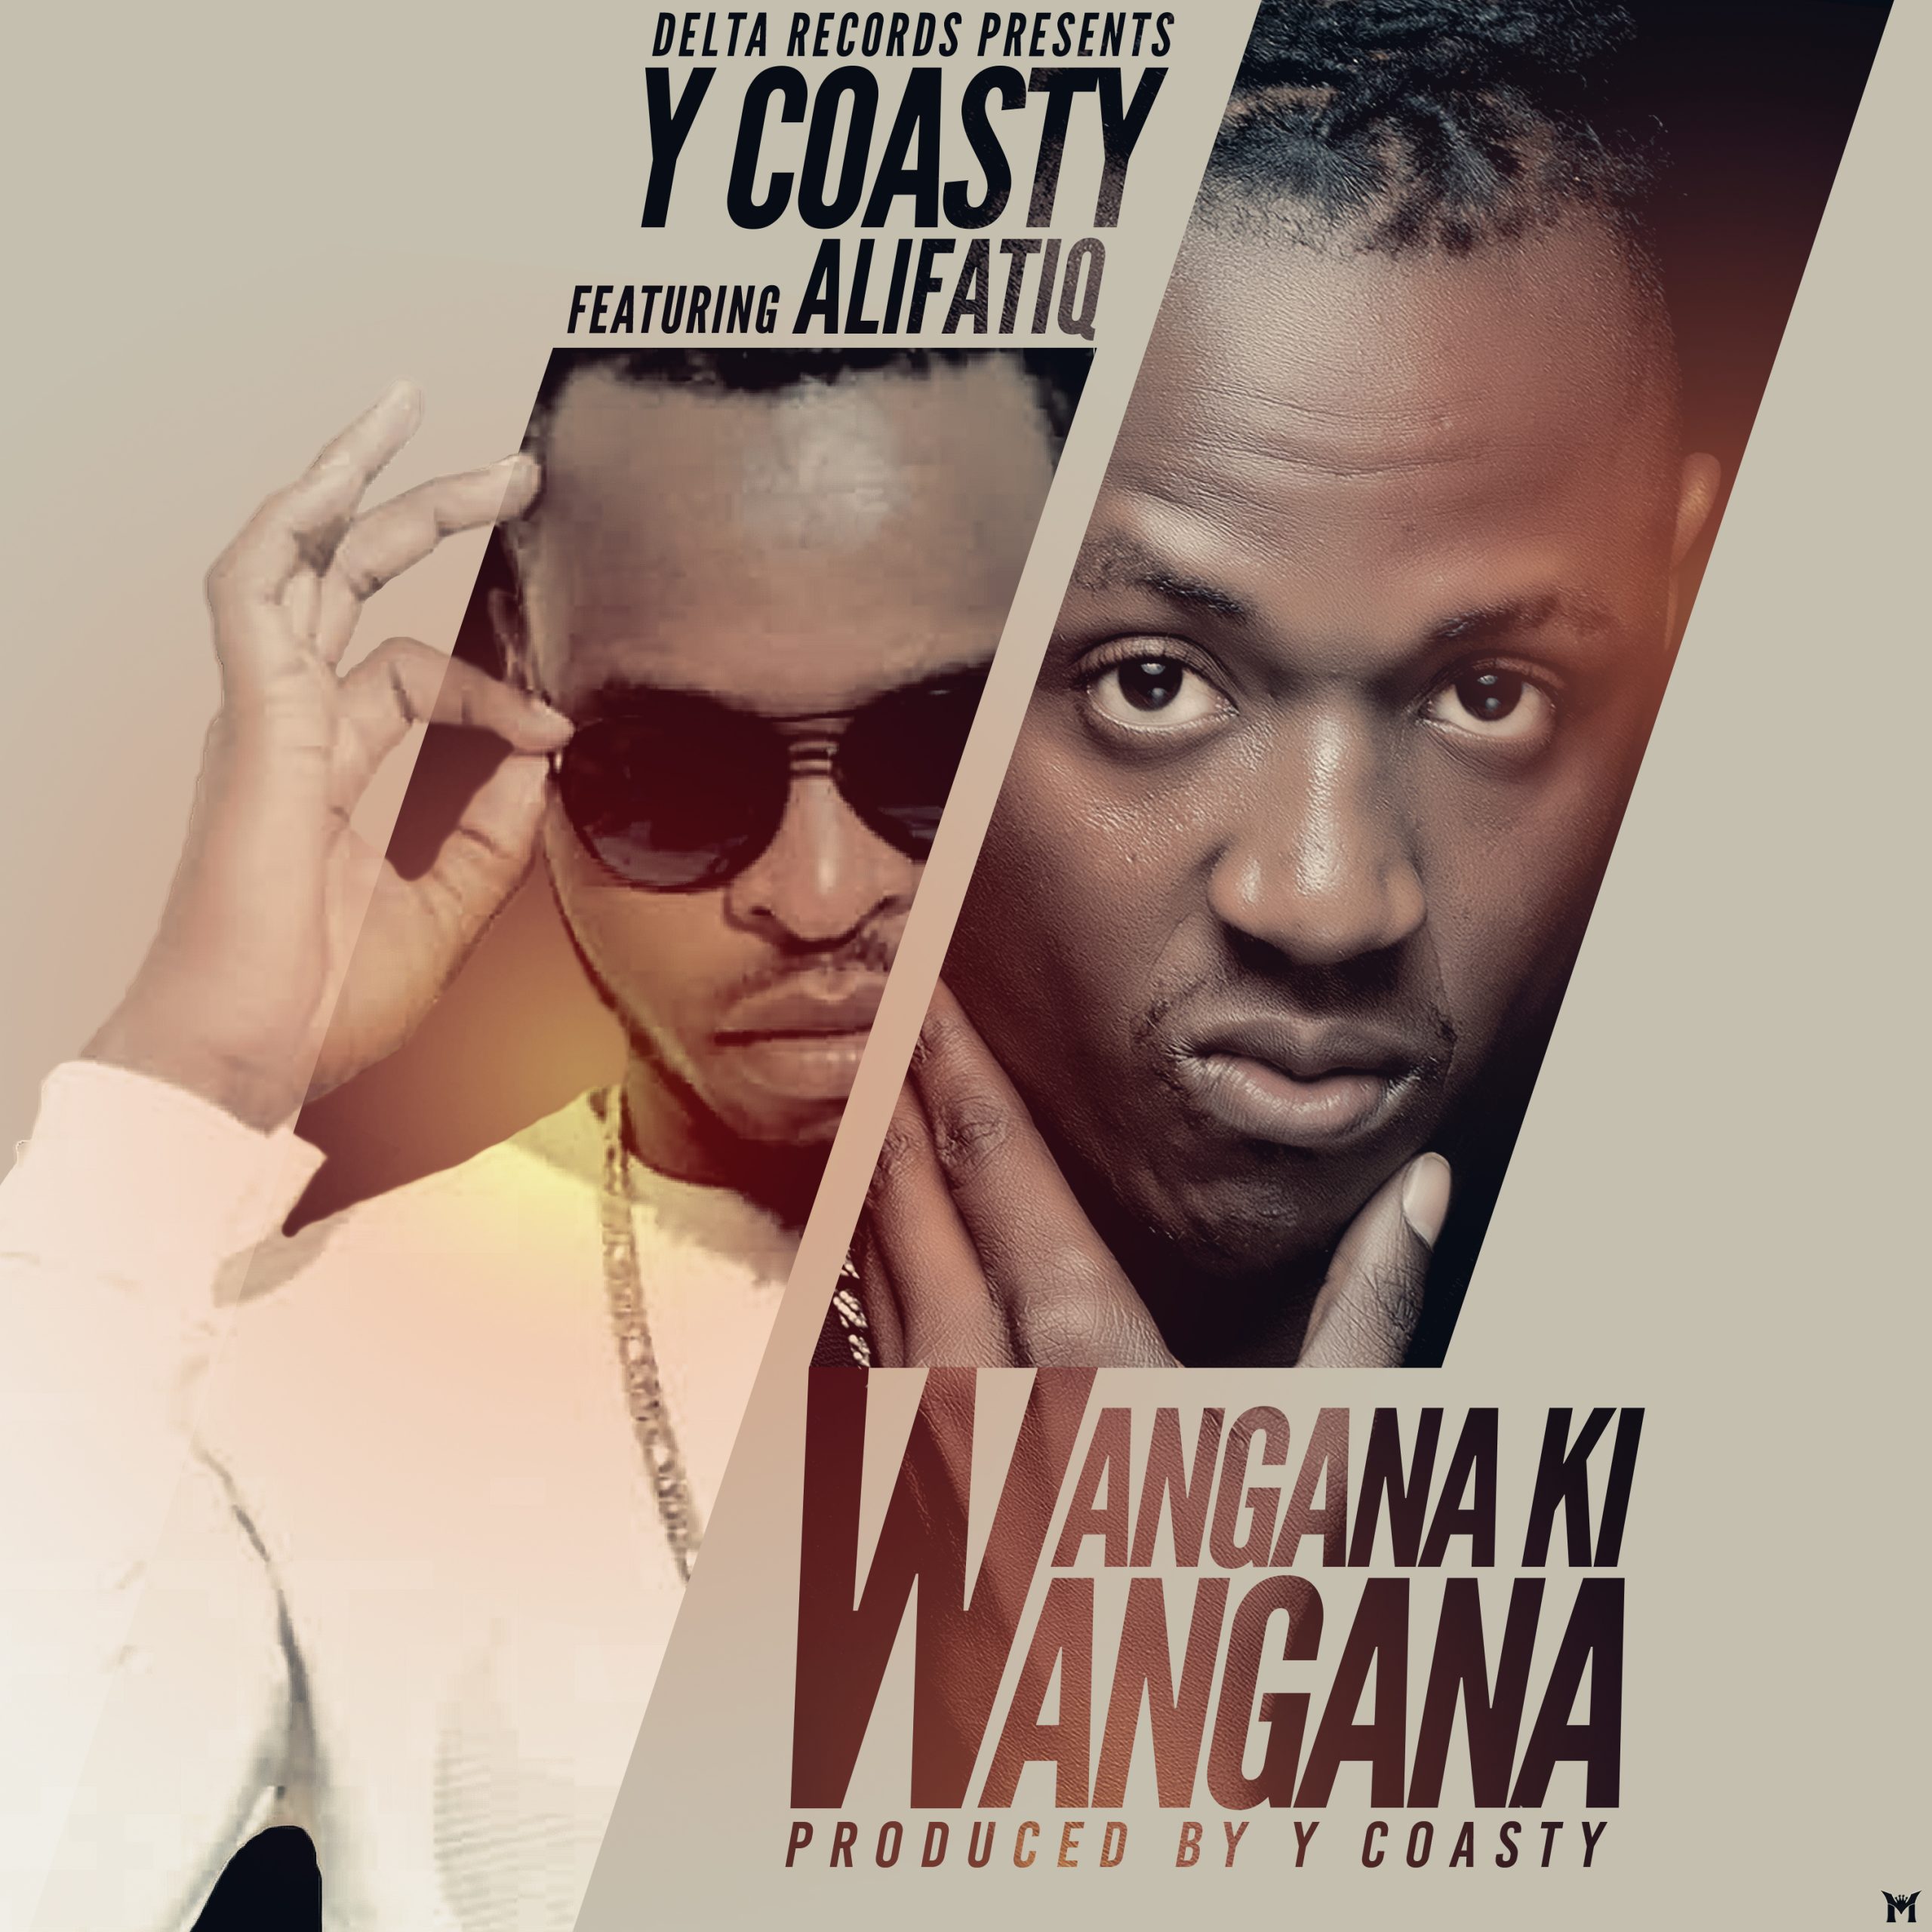 Y Coasty ft Alifatiq - Wangana Ki Wangana